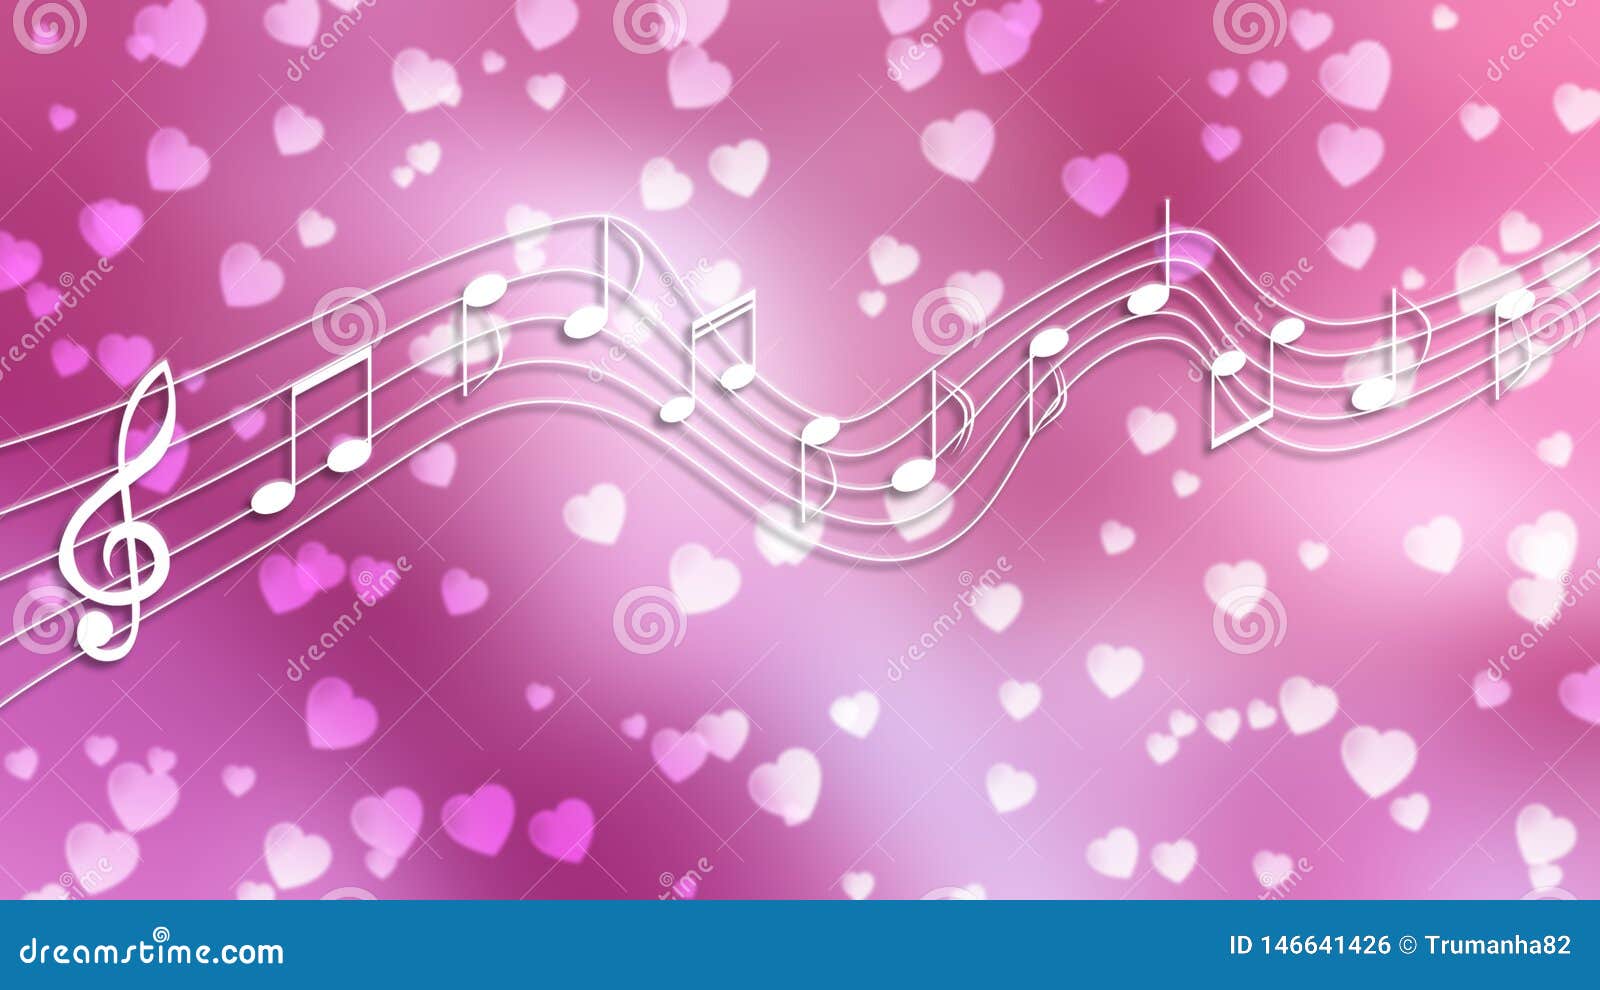 Nếu bạn yêu thích âm nhạc và màu hồng, hãy đến với những hình ảnh nội bật với nốt nhạc trắng và trái tim trên nền mờ hồng. Chúng sẽ đem lại cho bạn sự thư giãn và tình yêu vô tận cho âm nhạc. Hãy tải ảnh và dùng làm hình nền điện thoại của bạn ngay thôi!